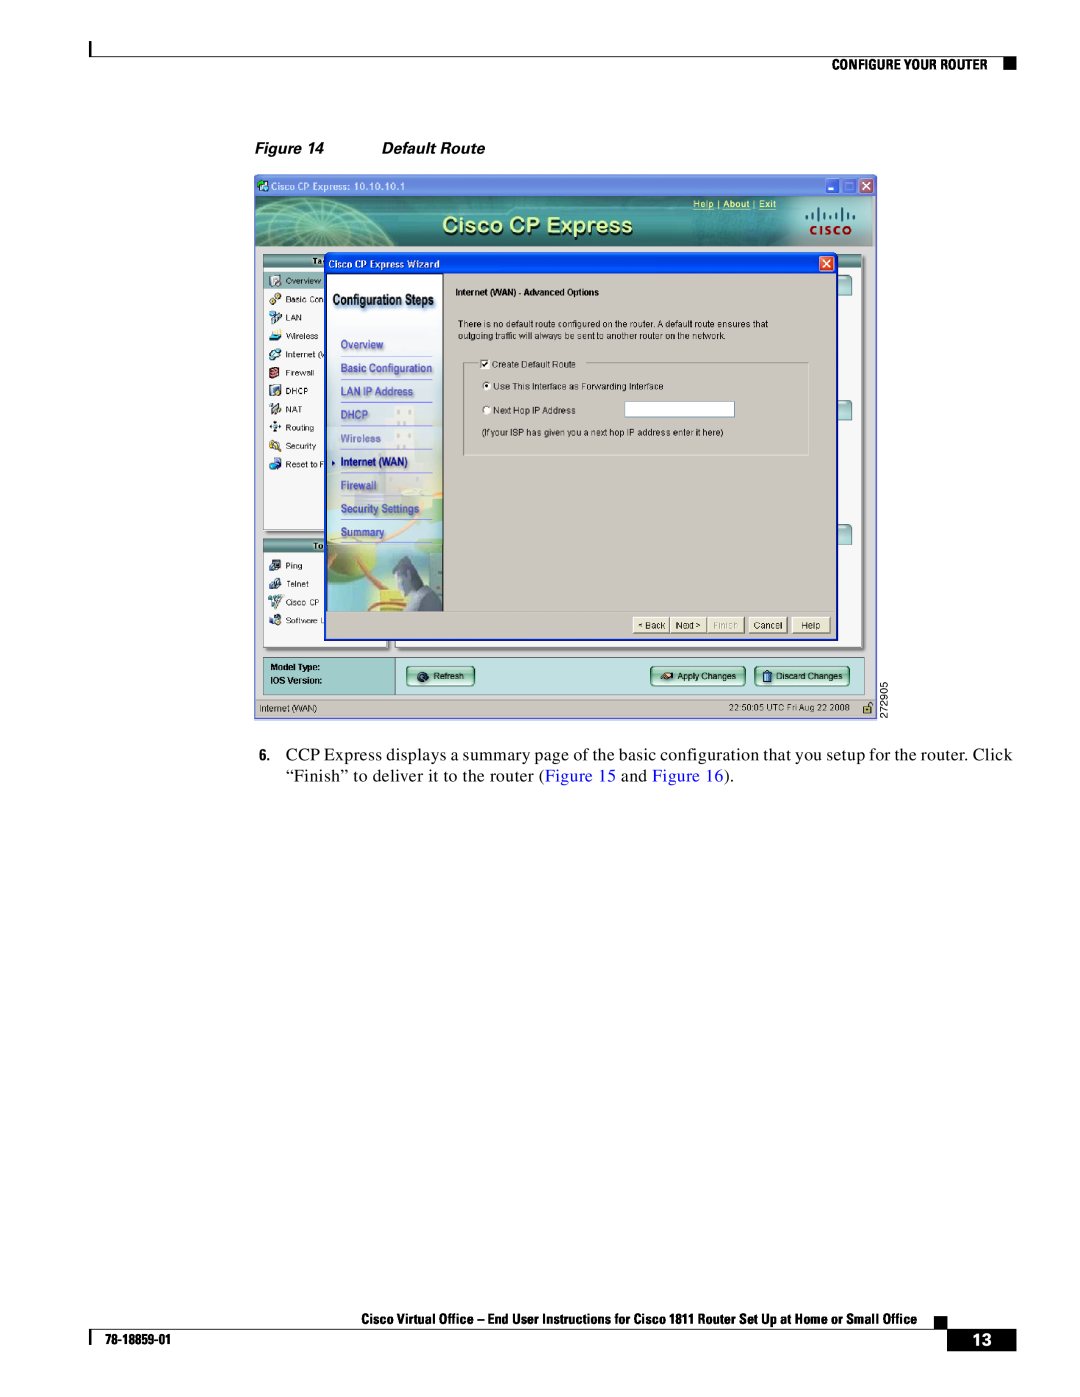 Cisco Systems CISCO1811 manual Default Route, Configure Your Router, 78-18859-01 